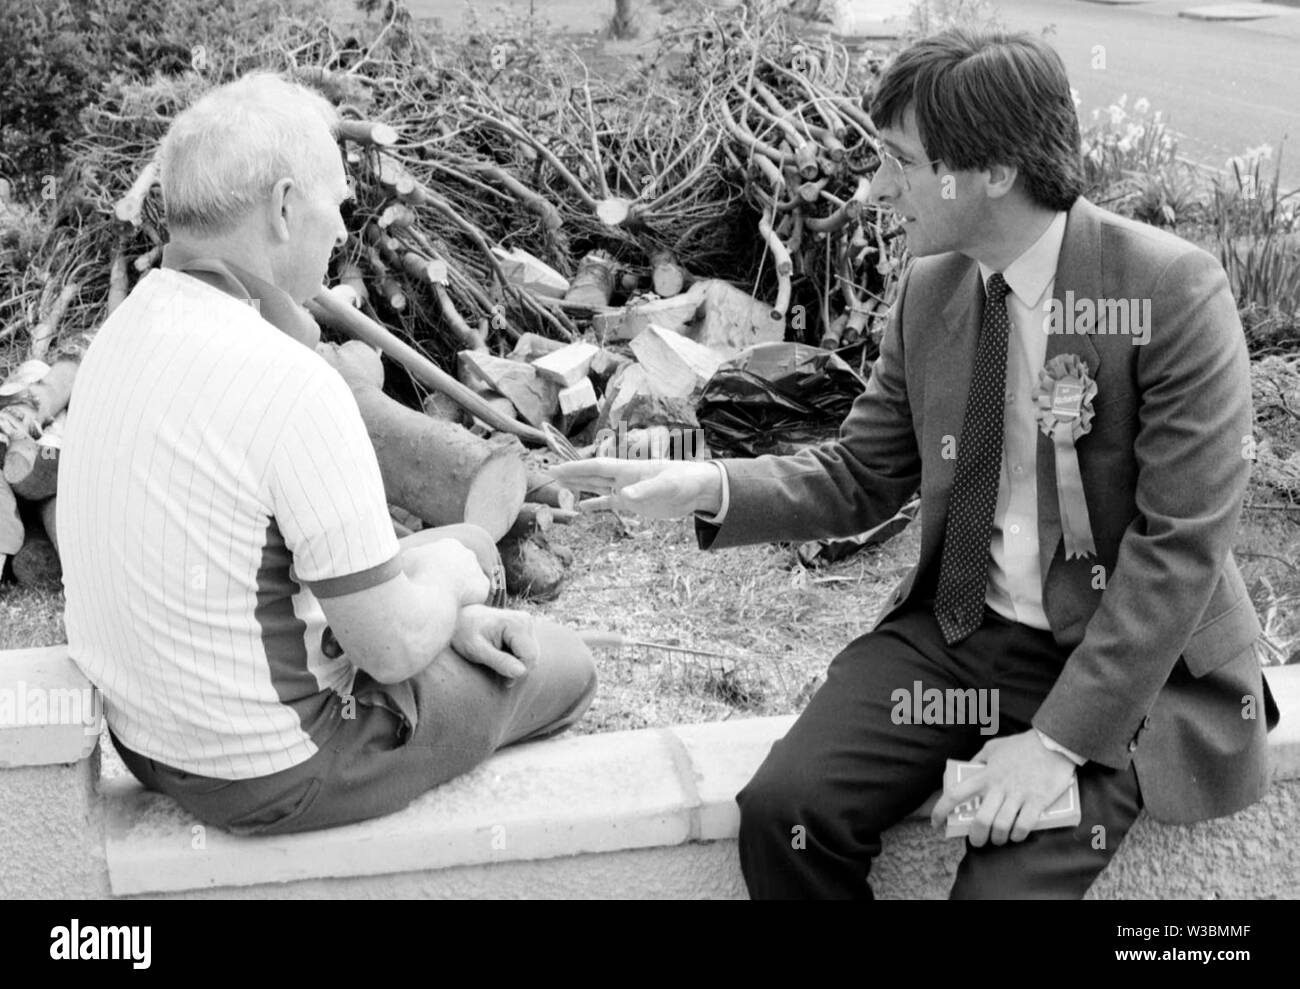 Rod Richards político conservador haciendo campaña en Barry, Gales del Sur, durante el 1989 por elección para el Valle de Glamorgan. Rod Richards murió el 13 de julio de 2019. Foto de stock